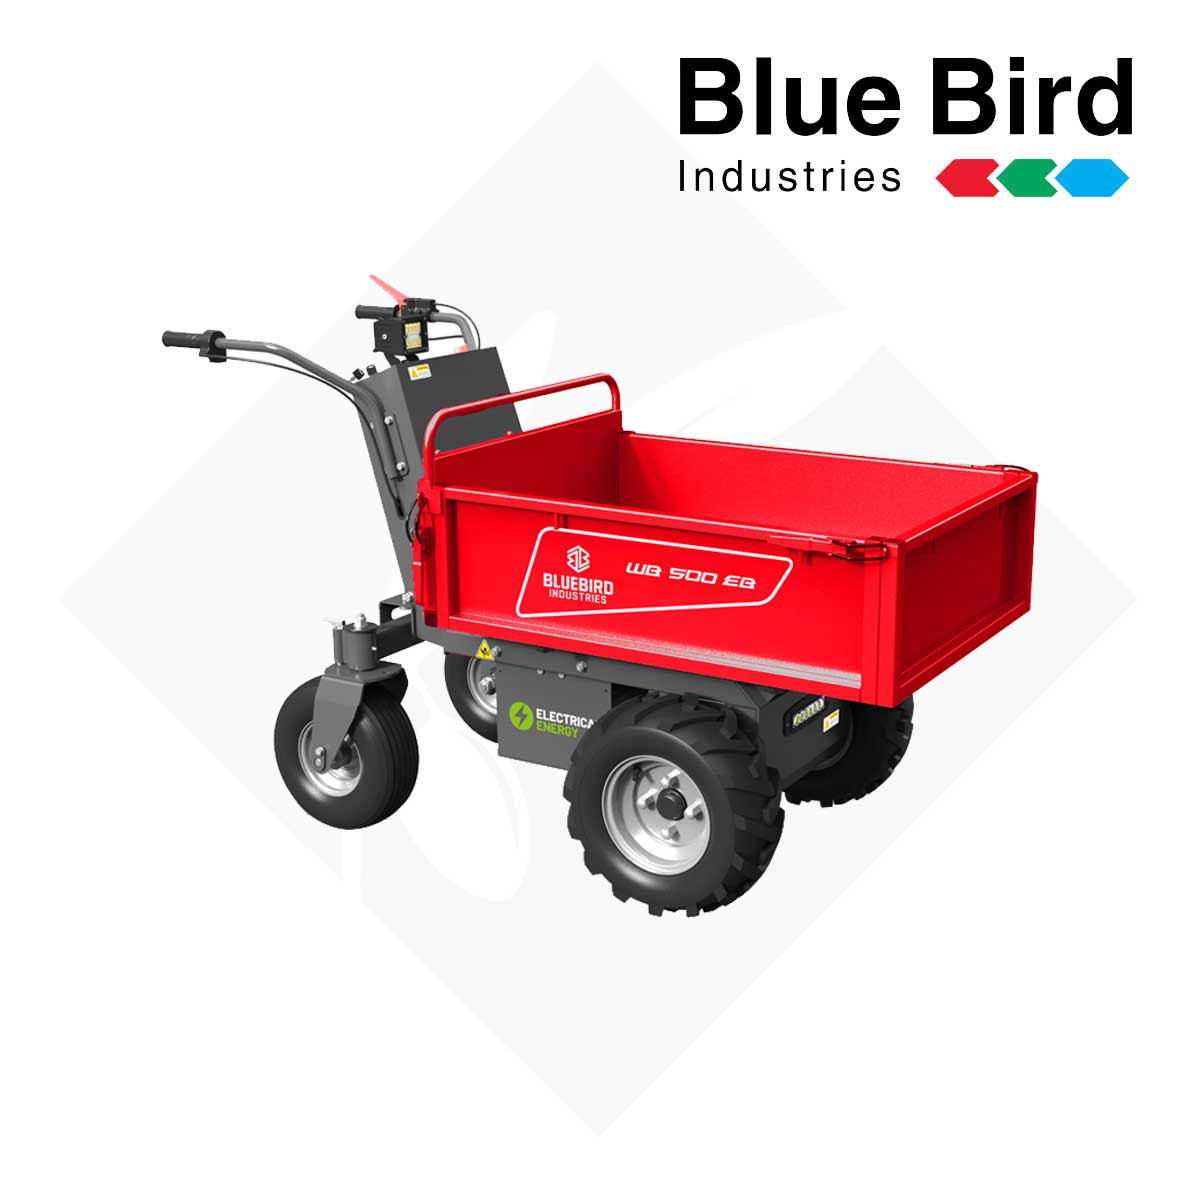 Μεταφορικό Μηχάνημα Μπαταρίας WB 500 EB - Blue Bird